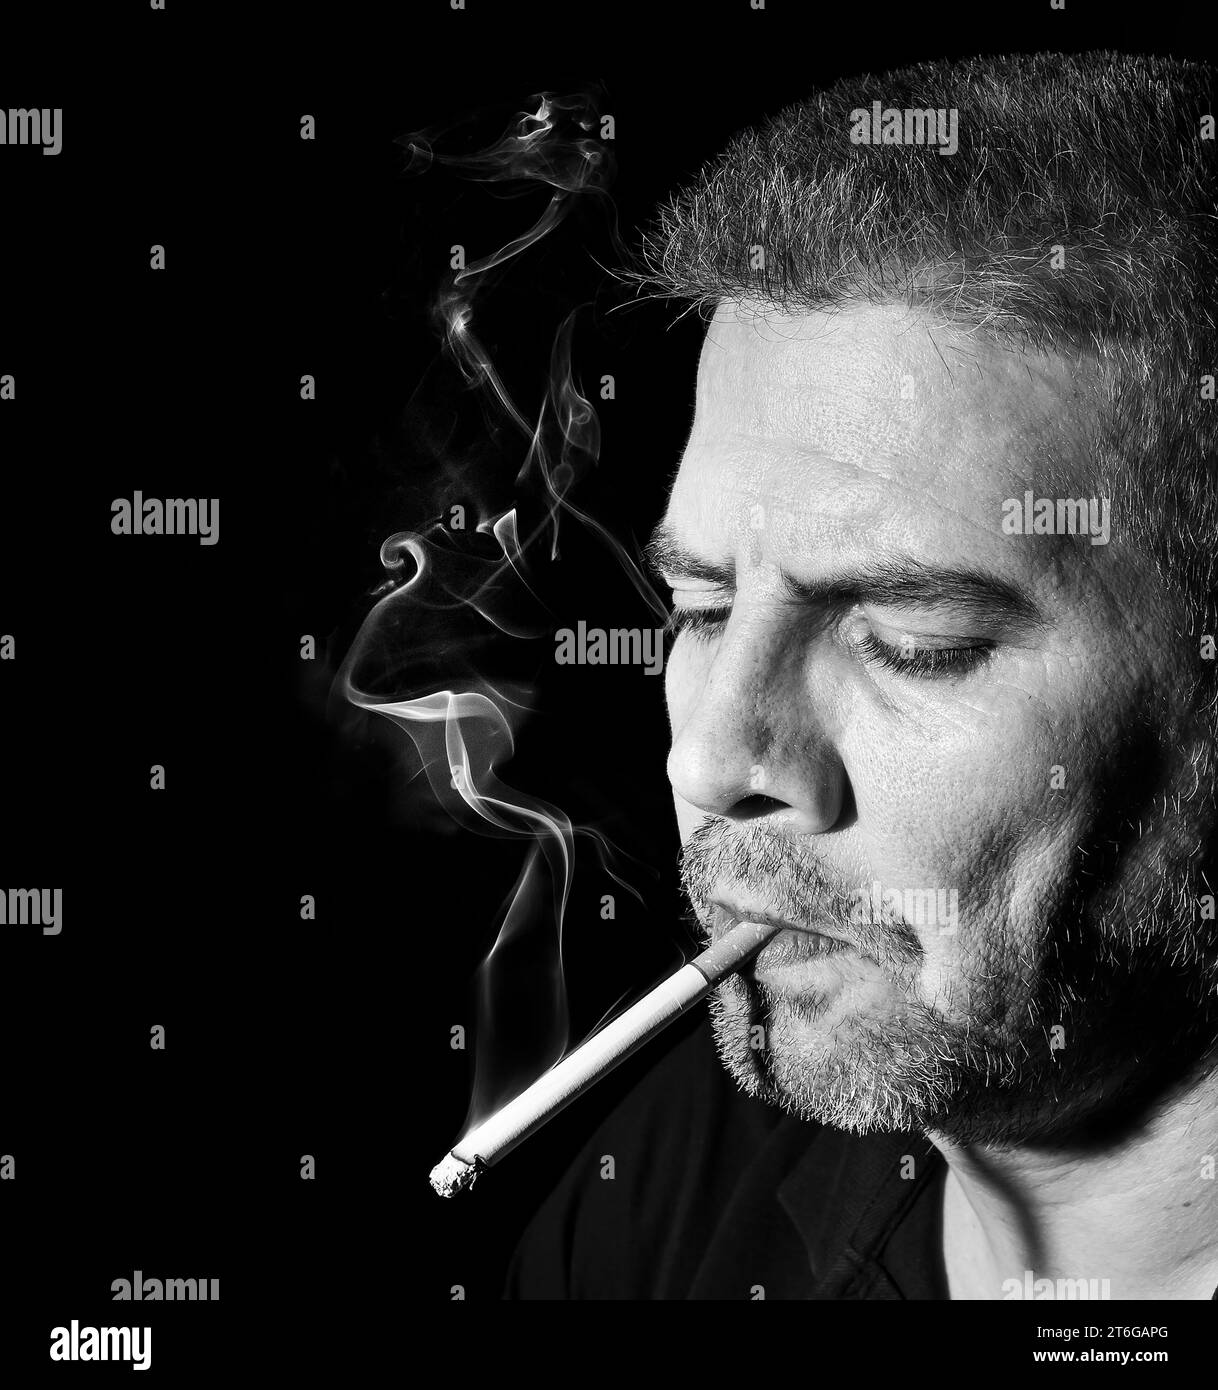 homme d'âge moyen fumant une cigarette Banque D'Images